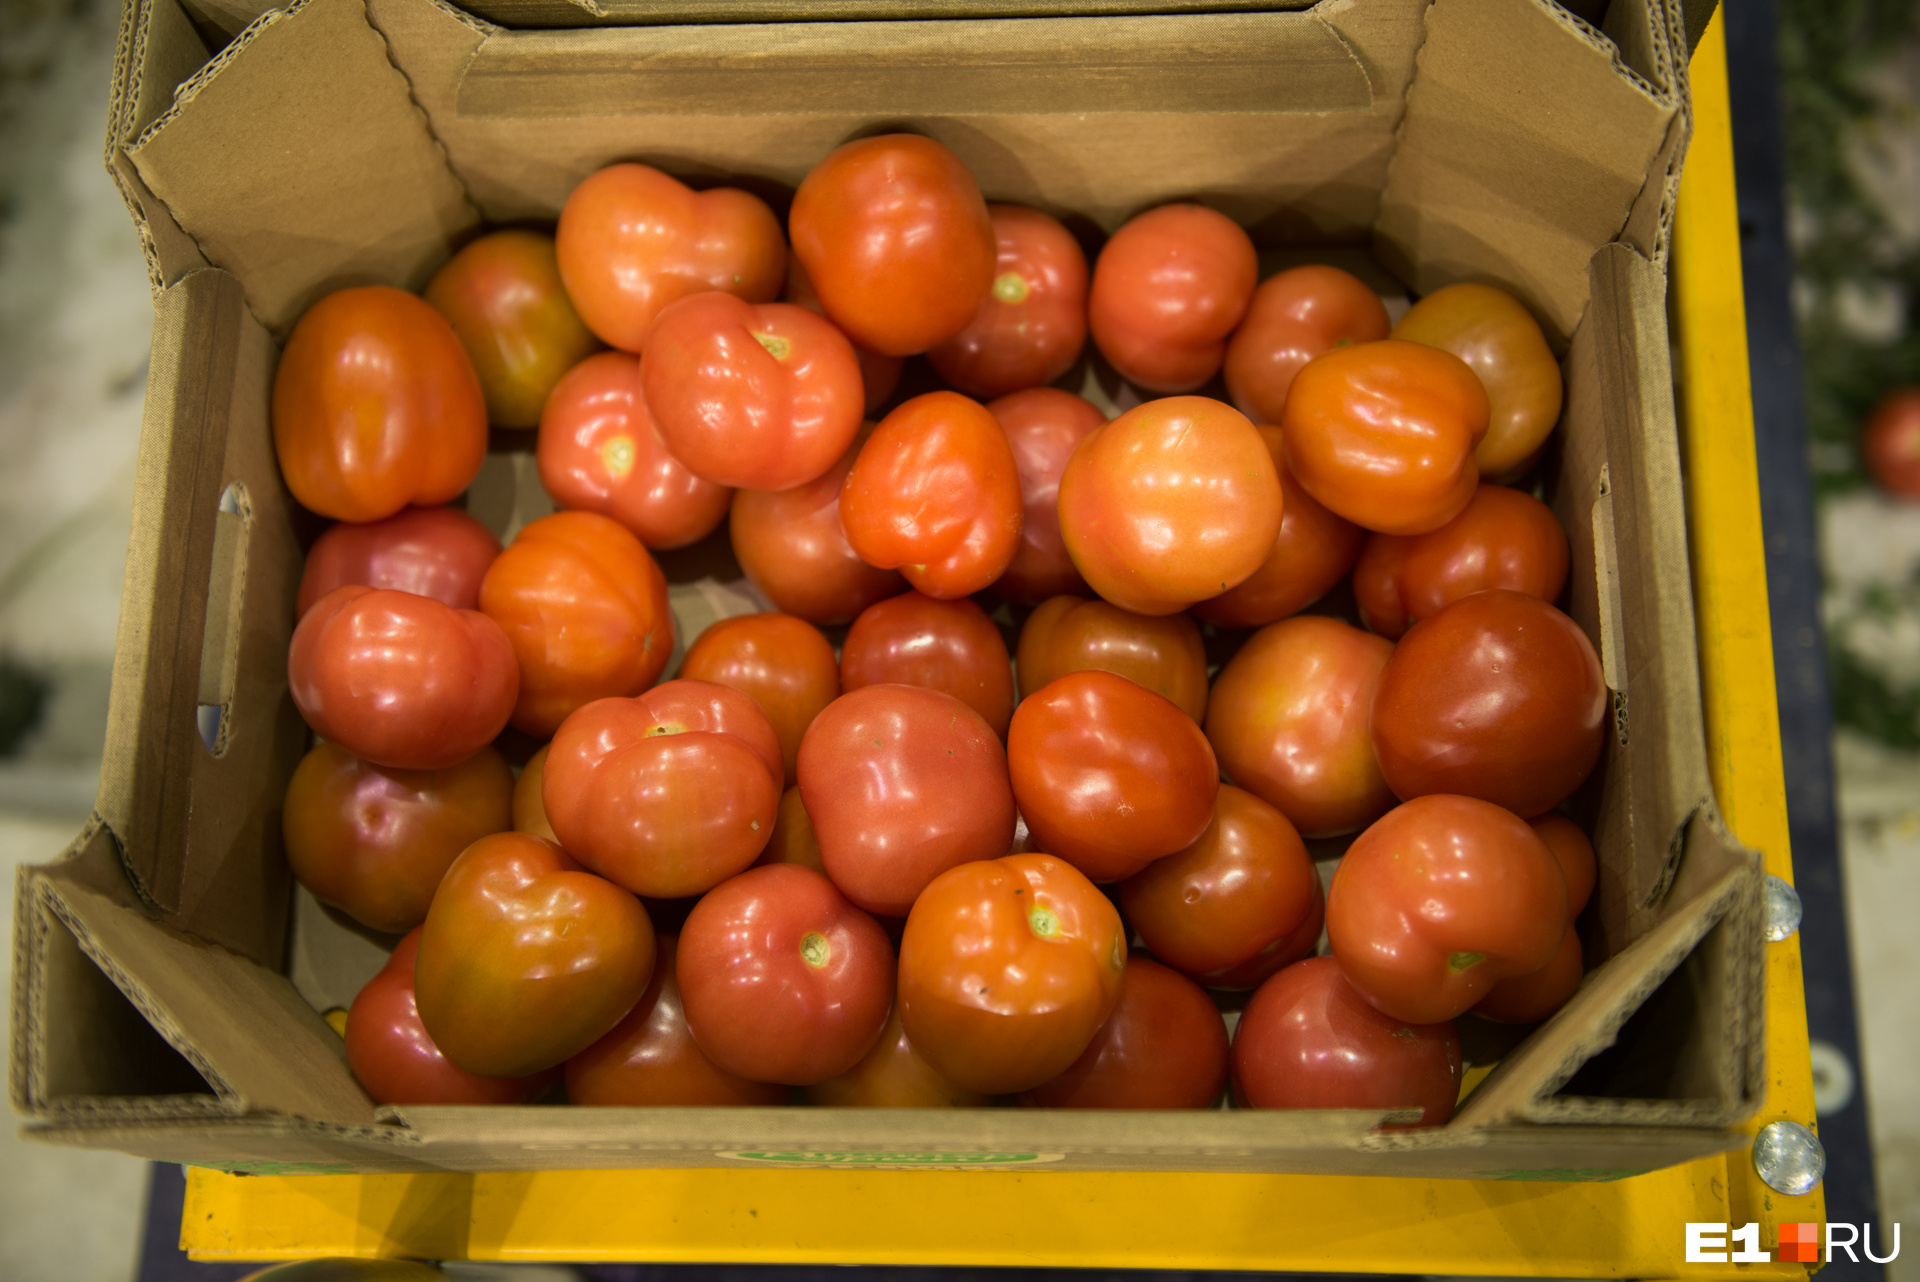 Что нужно делать, чтобы помидоры быстрее покраснели и были вкусными: советыэксперта - 17 июля 2021 - e1.ru